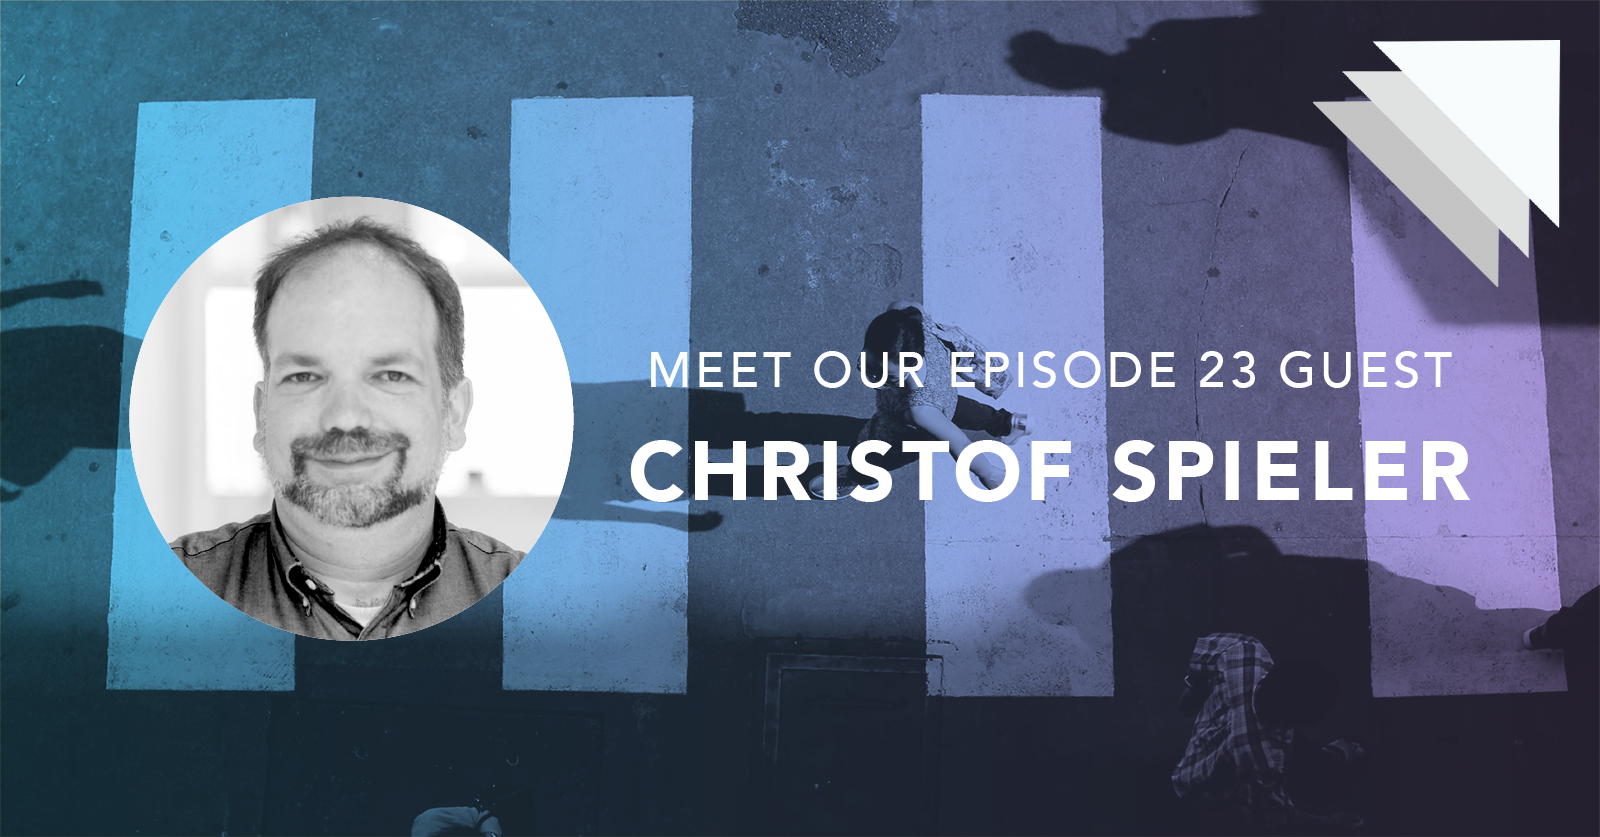 Meet our episode 23 guest Christof Spieler